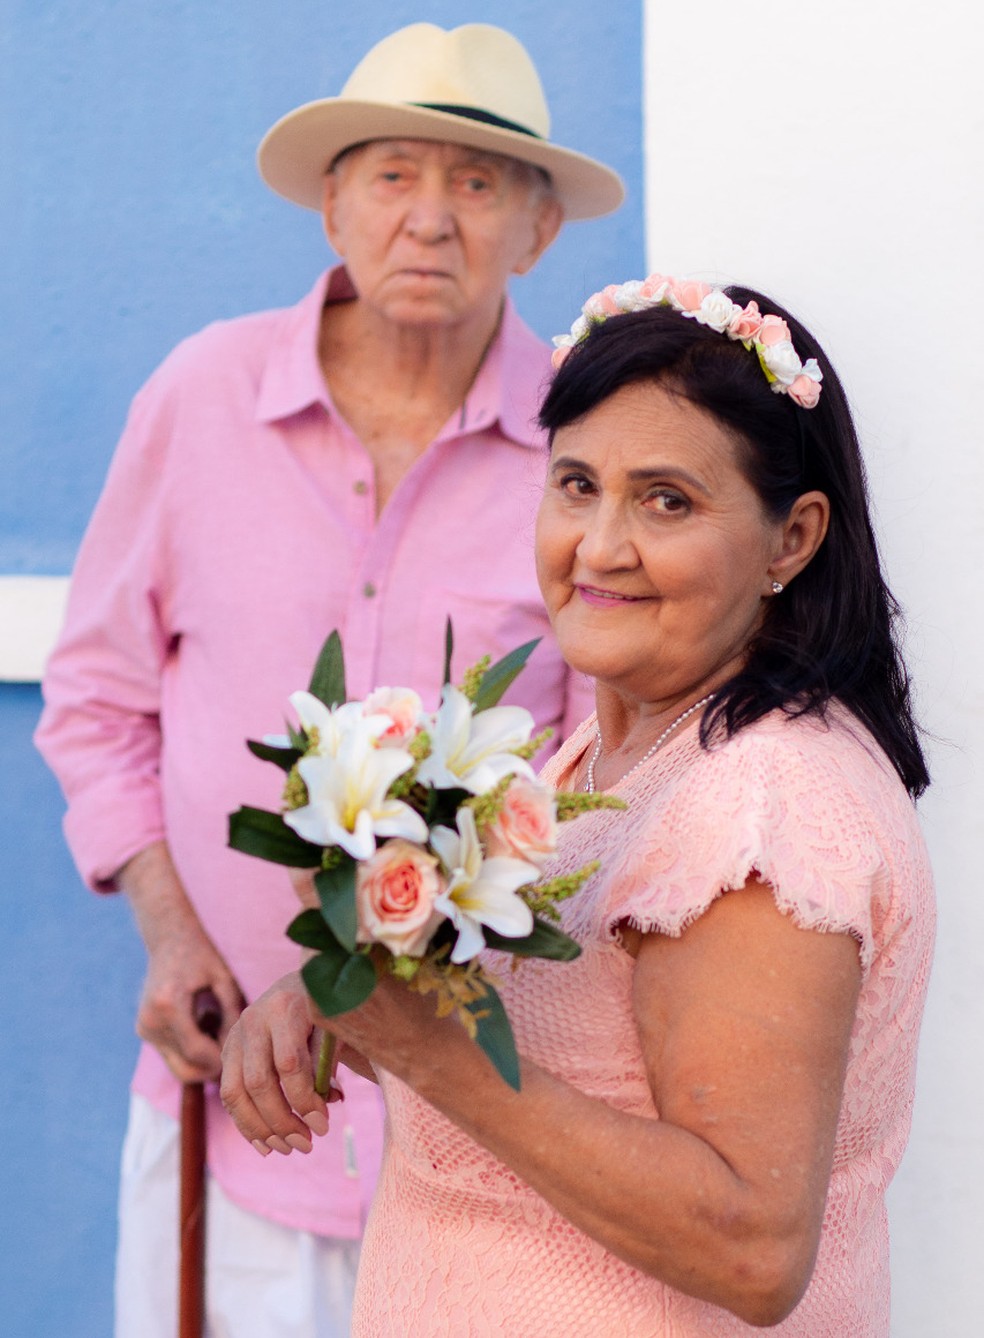 Aos 94 anos, homem realiza sonho da esposa de casar na igreja após quatro décadas juntos — Foto: Arquivo Pessoal